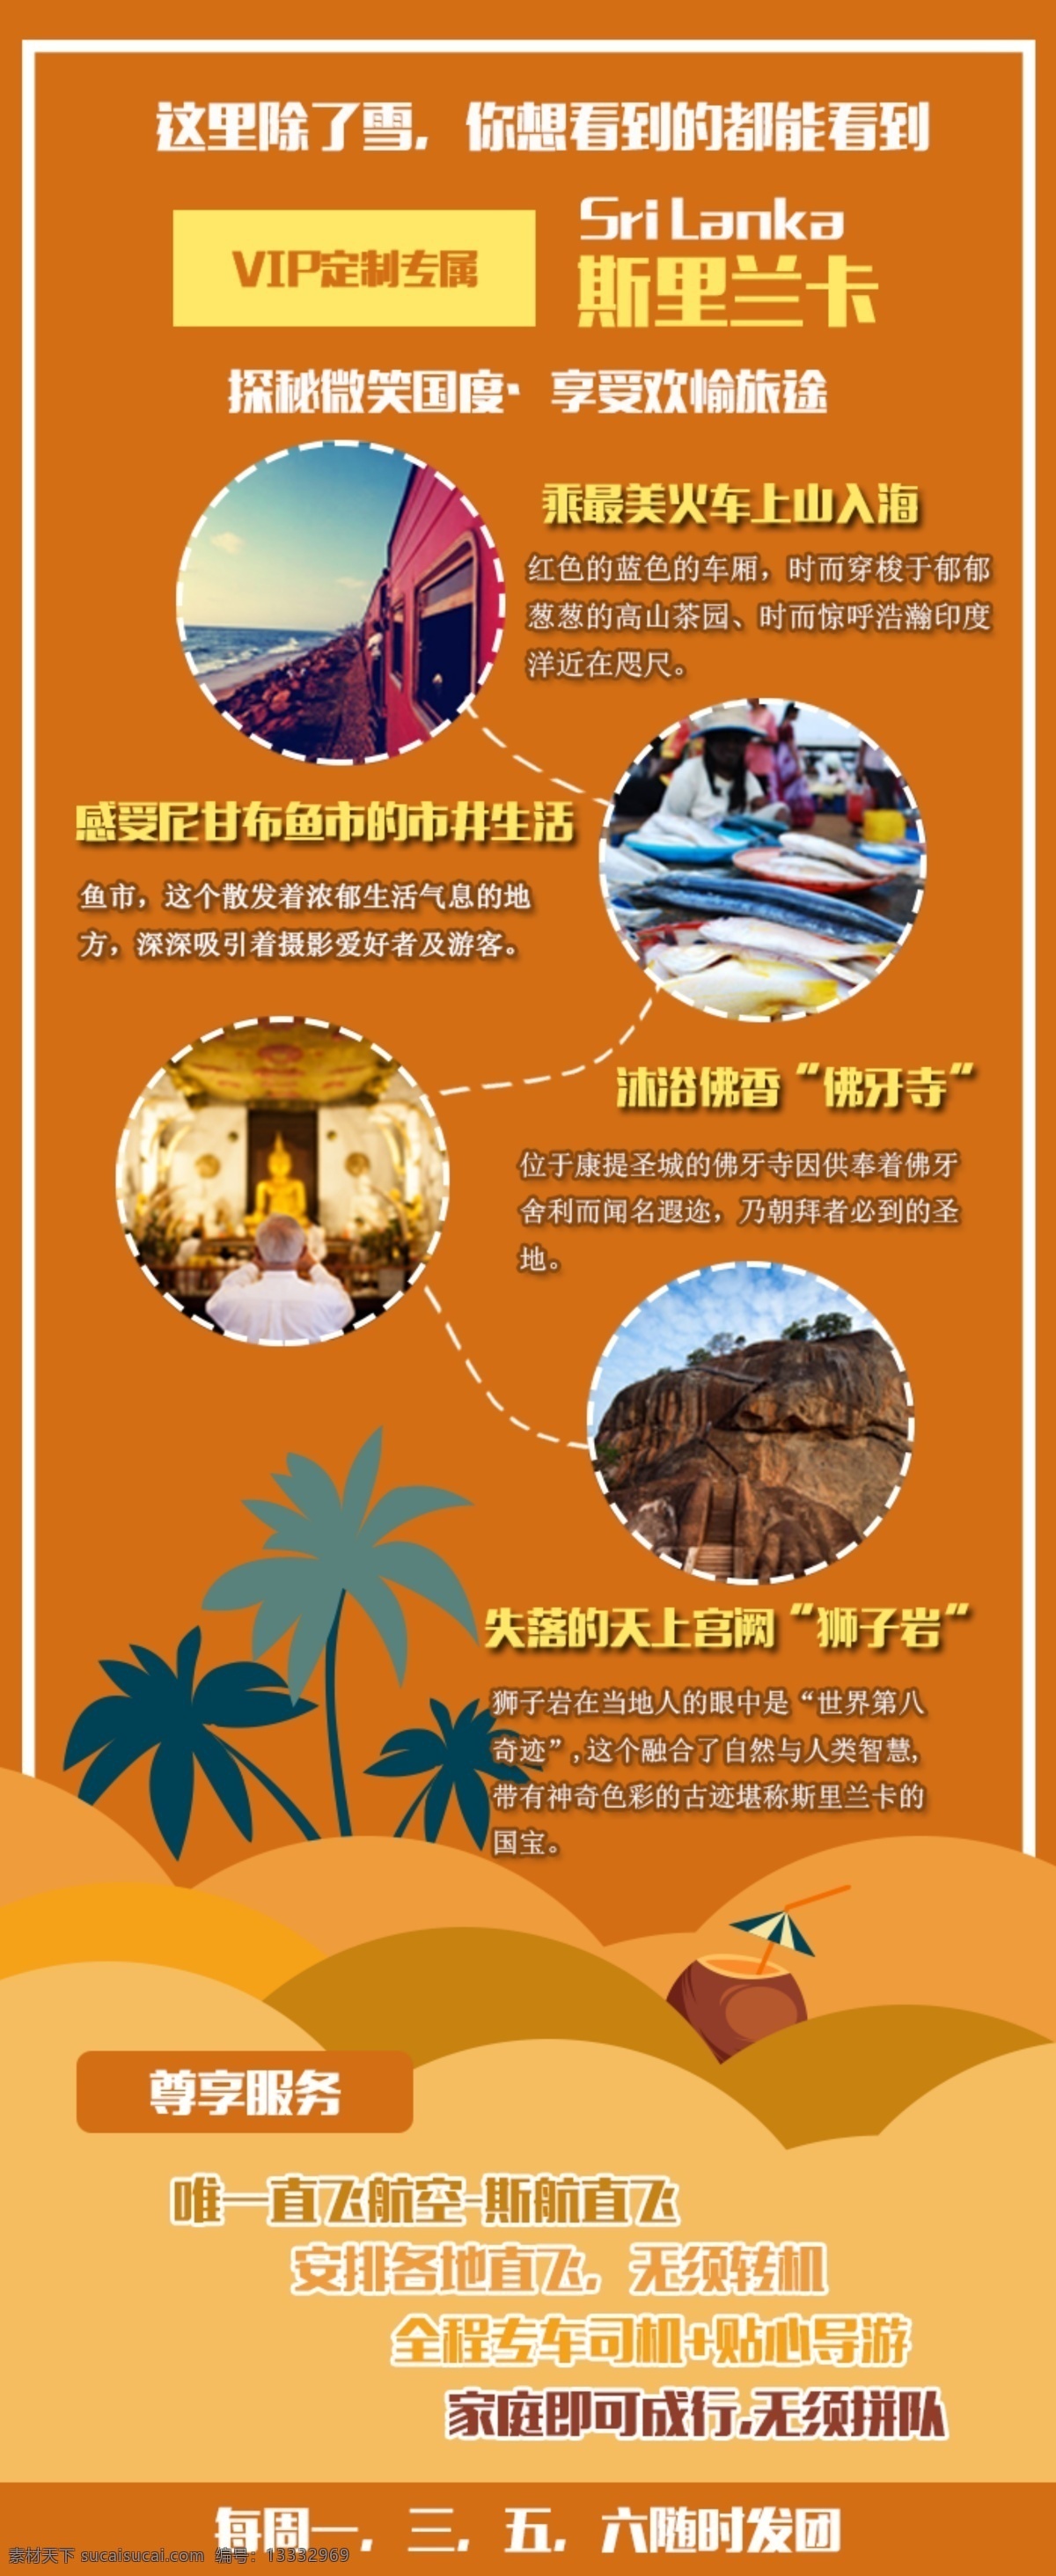 橙色 卡通 斯里兰卡 旅游 海报 海报模板 旅游海报 海岛旅游